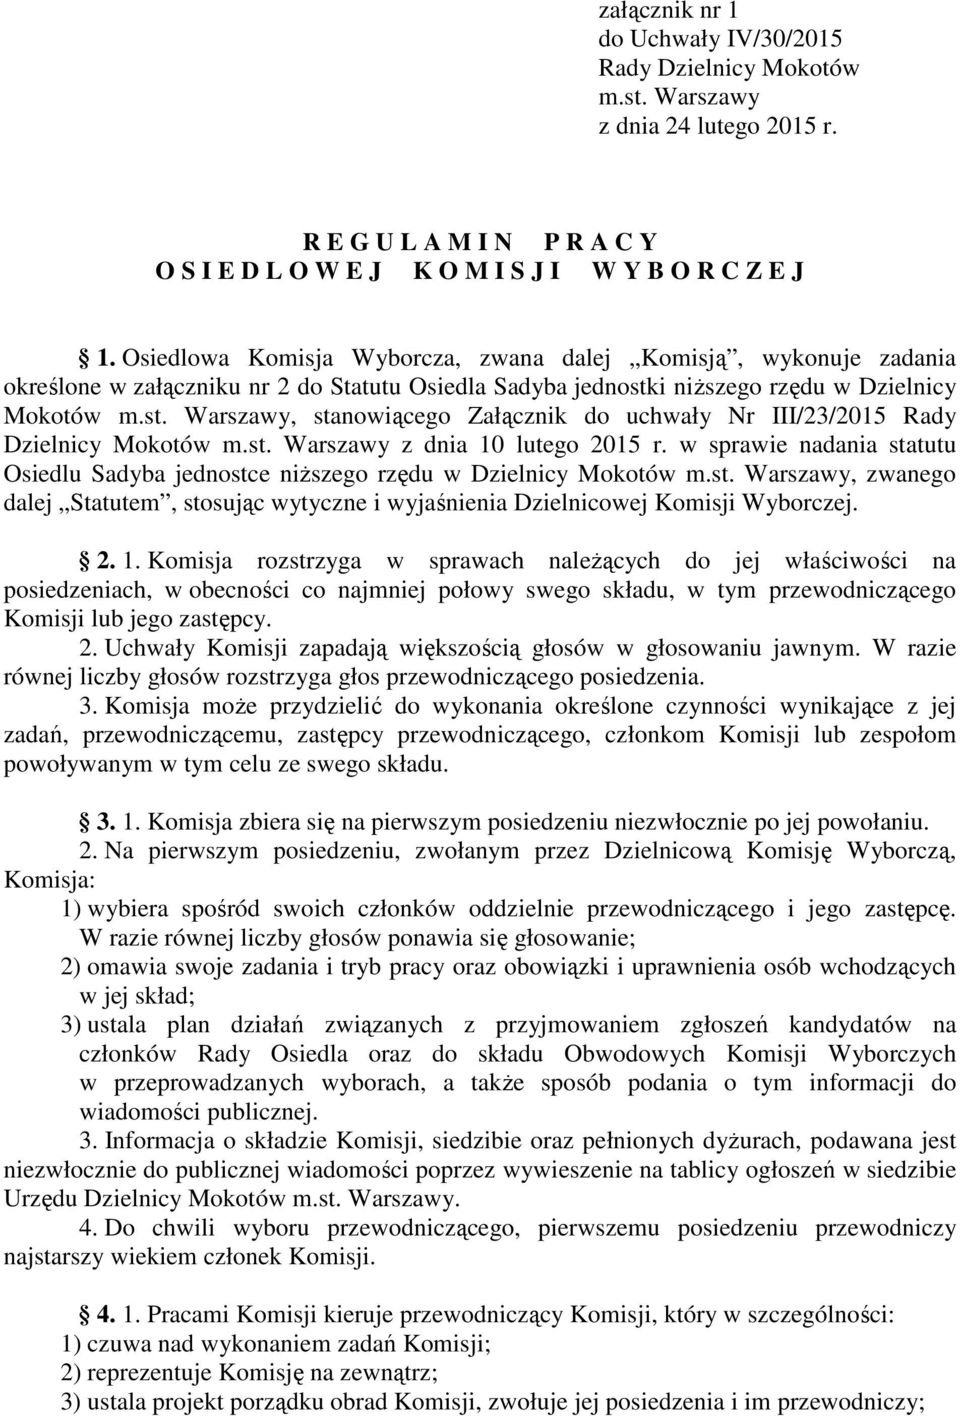 i niŝszego rzędu w Dzielnicy Mokotów m.st. Warszawy, stanowiącego Załącznik do uchwały Nr III/23/2015 Rady Dzielnicy Mokotów m.st. Warszawy z dnia 10 lutego 2015 r.